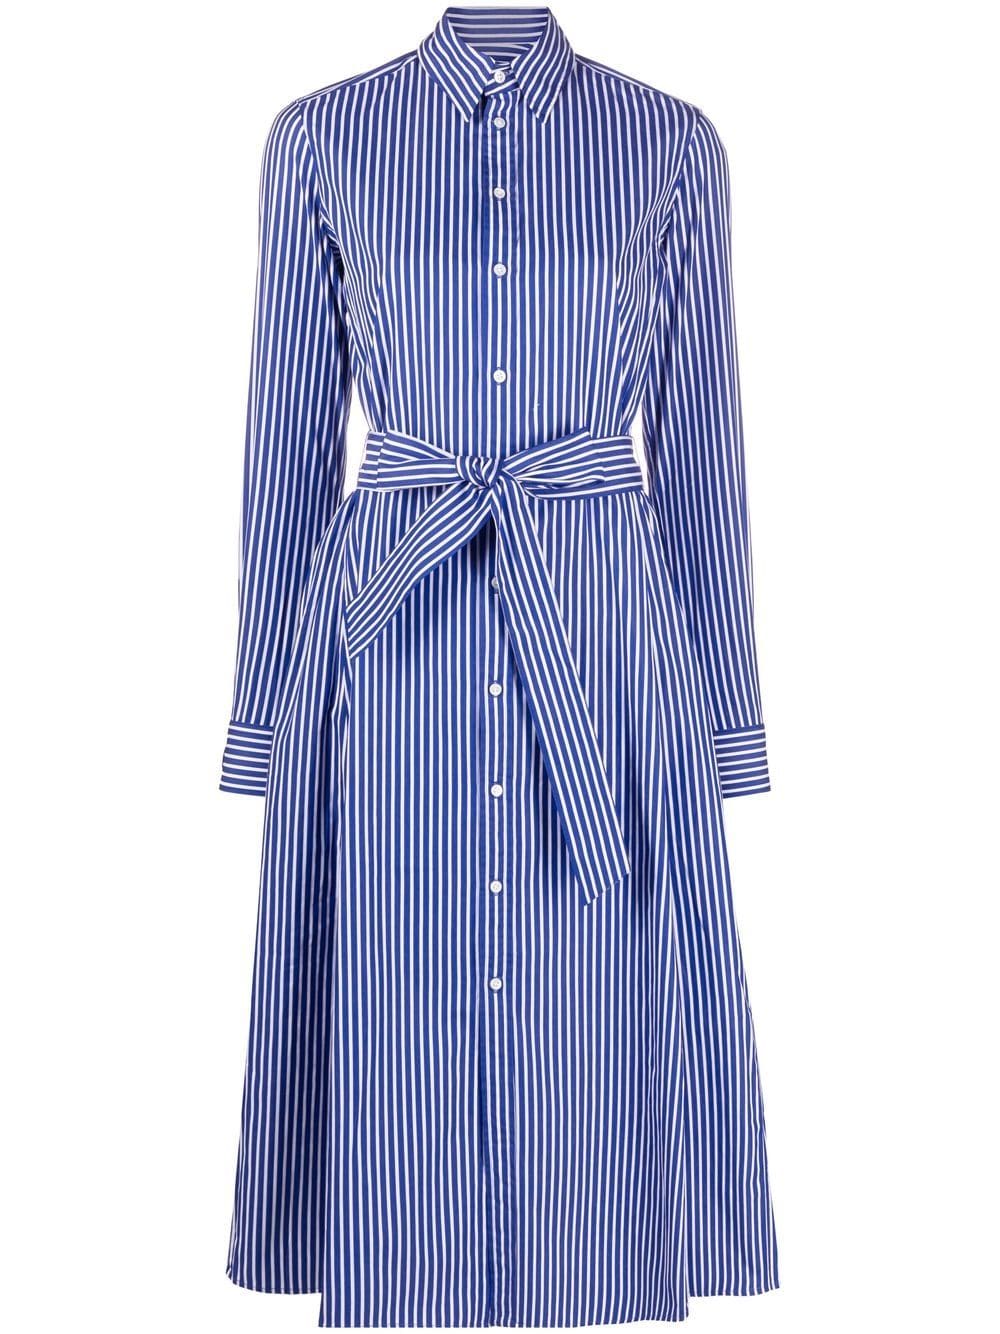 Lauren Ralph Lauren Triella Striped Shirt Dress - Farfetch